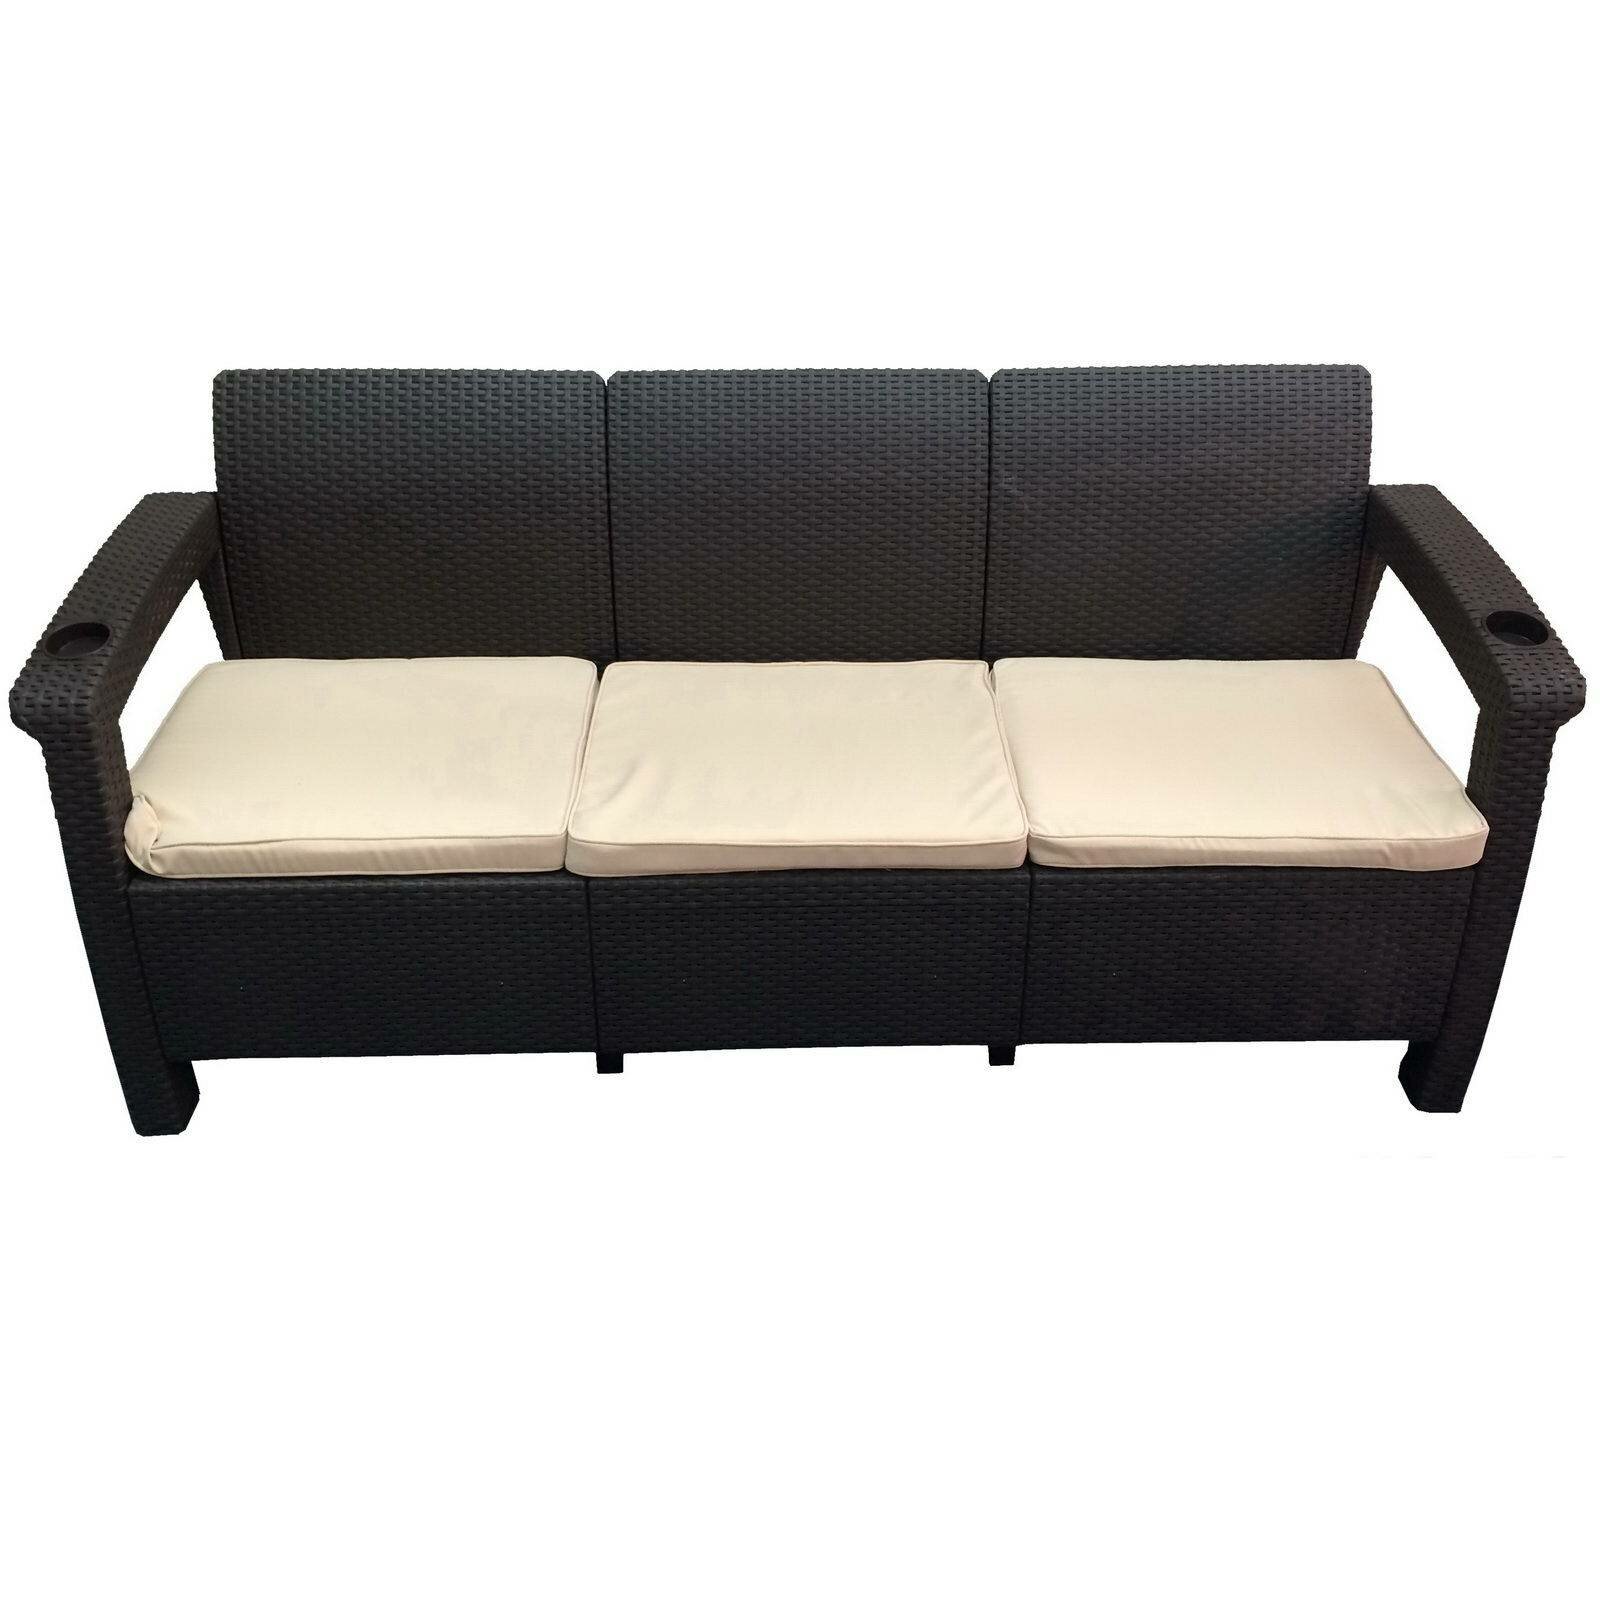 Трехместный диван Yalta Sofa 3 Seat Коричневый